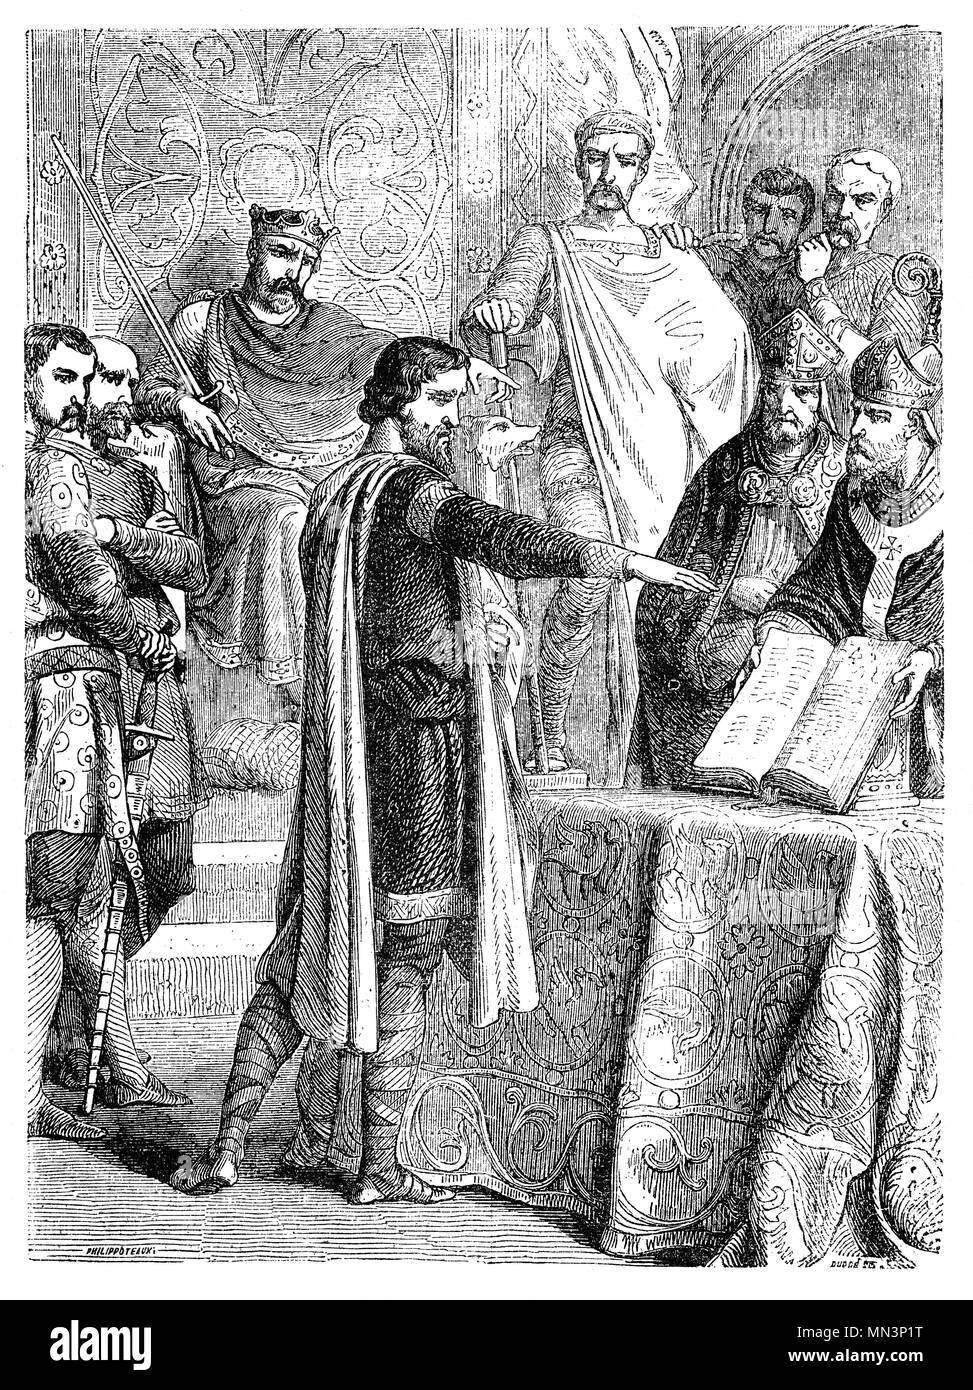 Harold Godwinson (1022-1066), häufig auch als Harold II., war der letzte angelsächsische König von England. Er regierte von 6. Januar 1066 bis zu seinem Tod in der Schlacht von Hastings. Früher, im Jahre 1064, Harold war anscheinend an der Küste der Normandie Schiffbruch und später schwor auf, heilige Reliquien zu William seinen Anspruch auf den englischen Thron zu unterstützen. Nach Edward's Tod, Harold brach diese angebliche Eid. Und so am 14. Oktober, Harold starb im Kampf gegen die normannischen Invasoren von Wilhelm dem Eroberer während der Normannischen Eroberung Englands geführt. Stockfoto